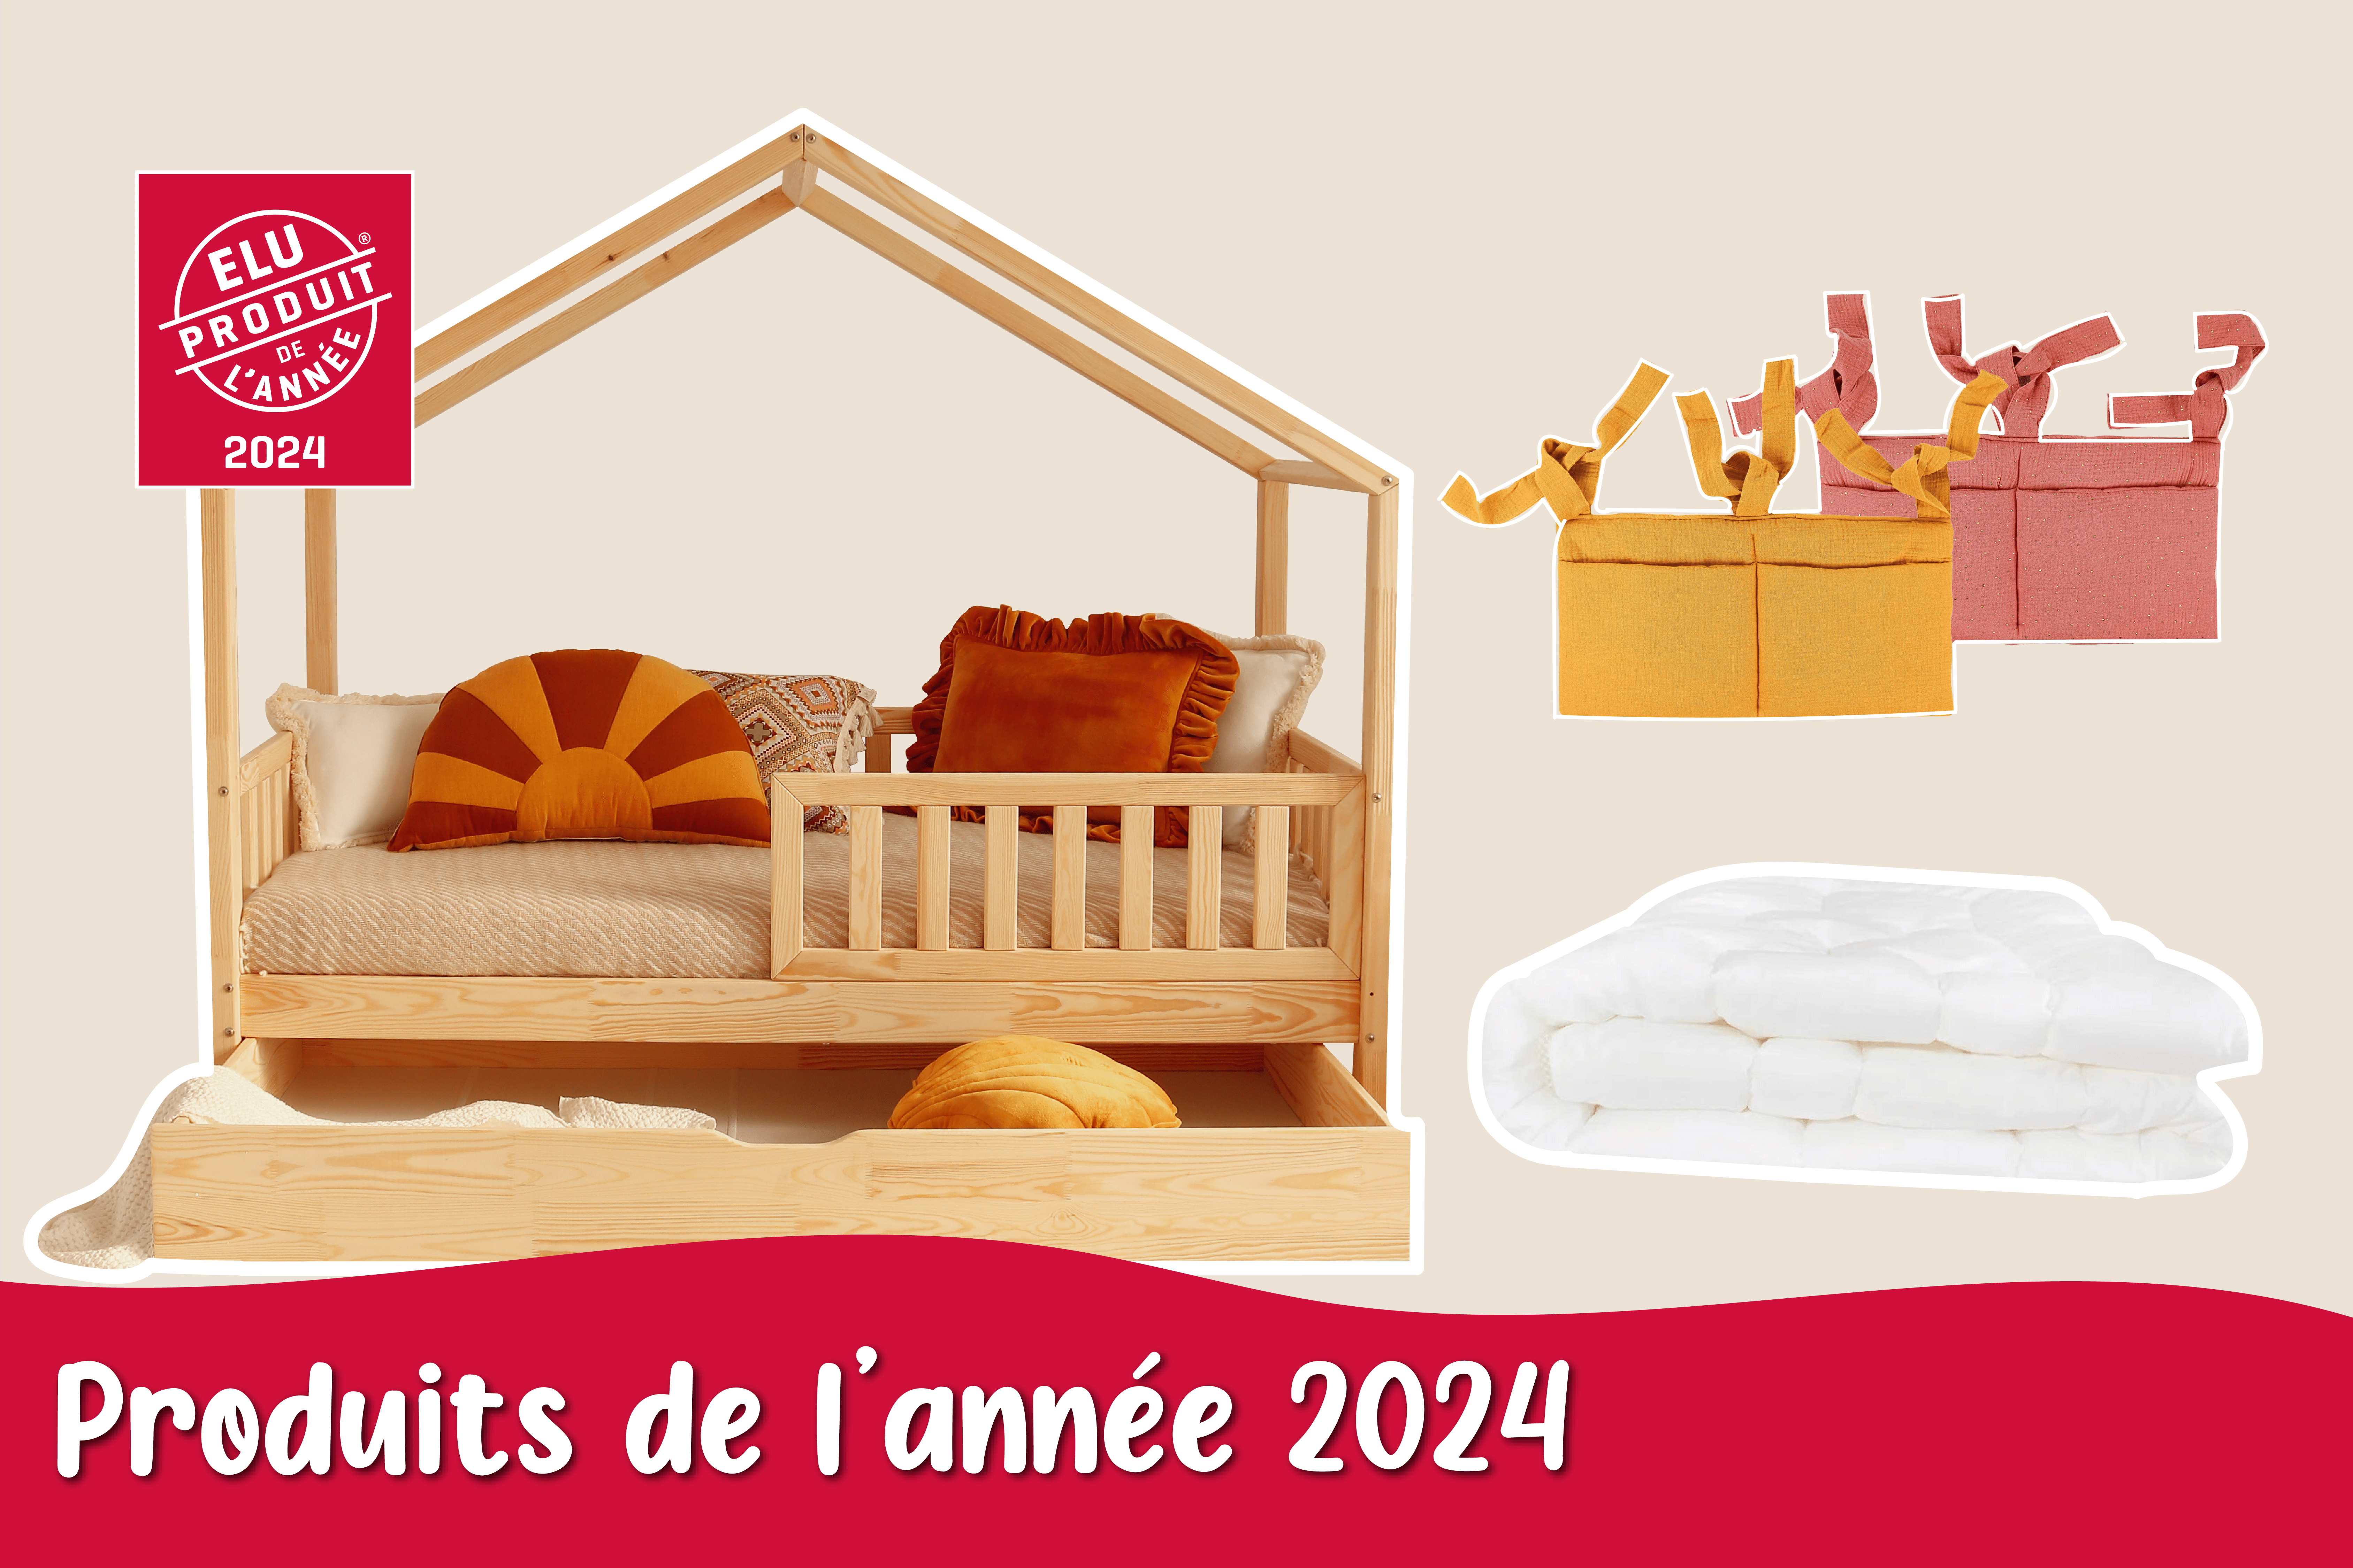 Le lit cabane : la nouvelle tendance qui transforme le lit d'enfant en un  mobilier déco original ! - MyQuintus